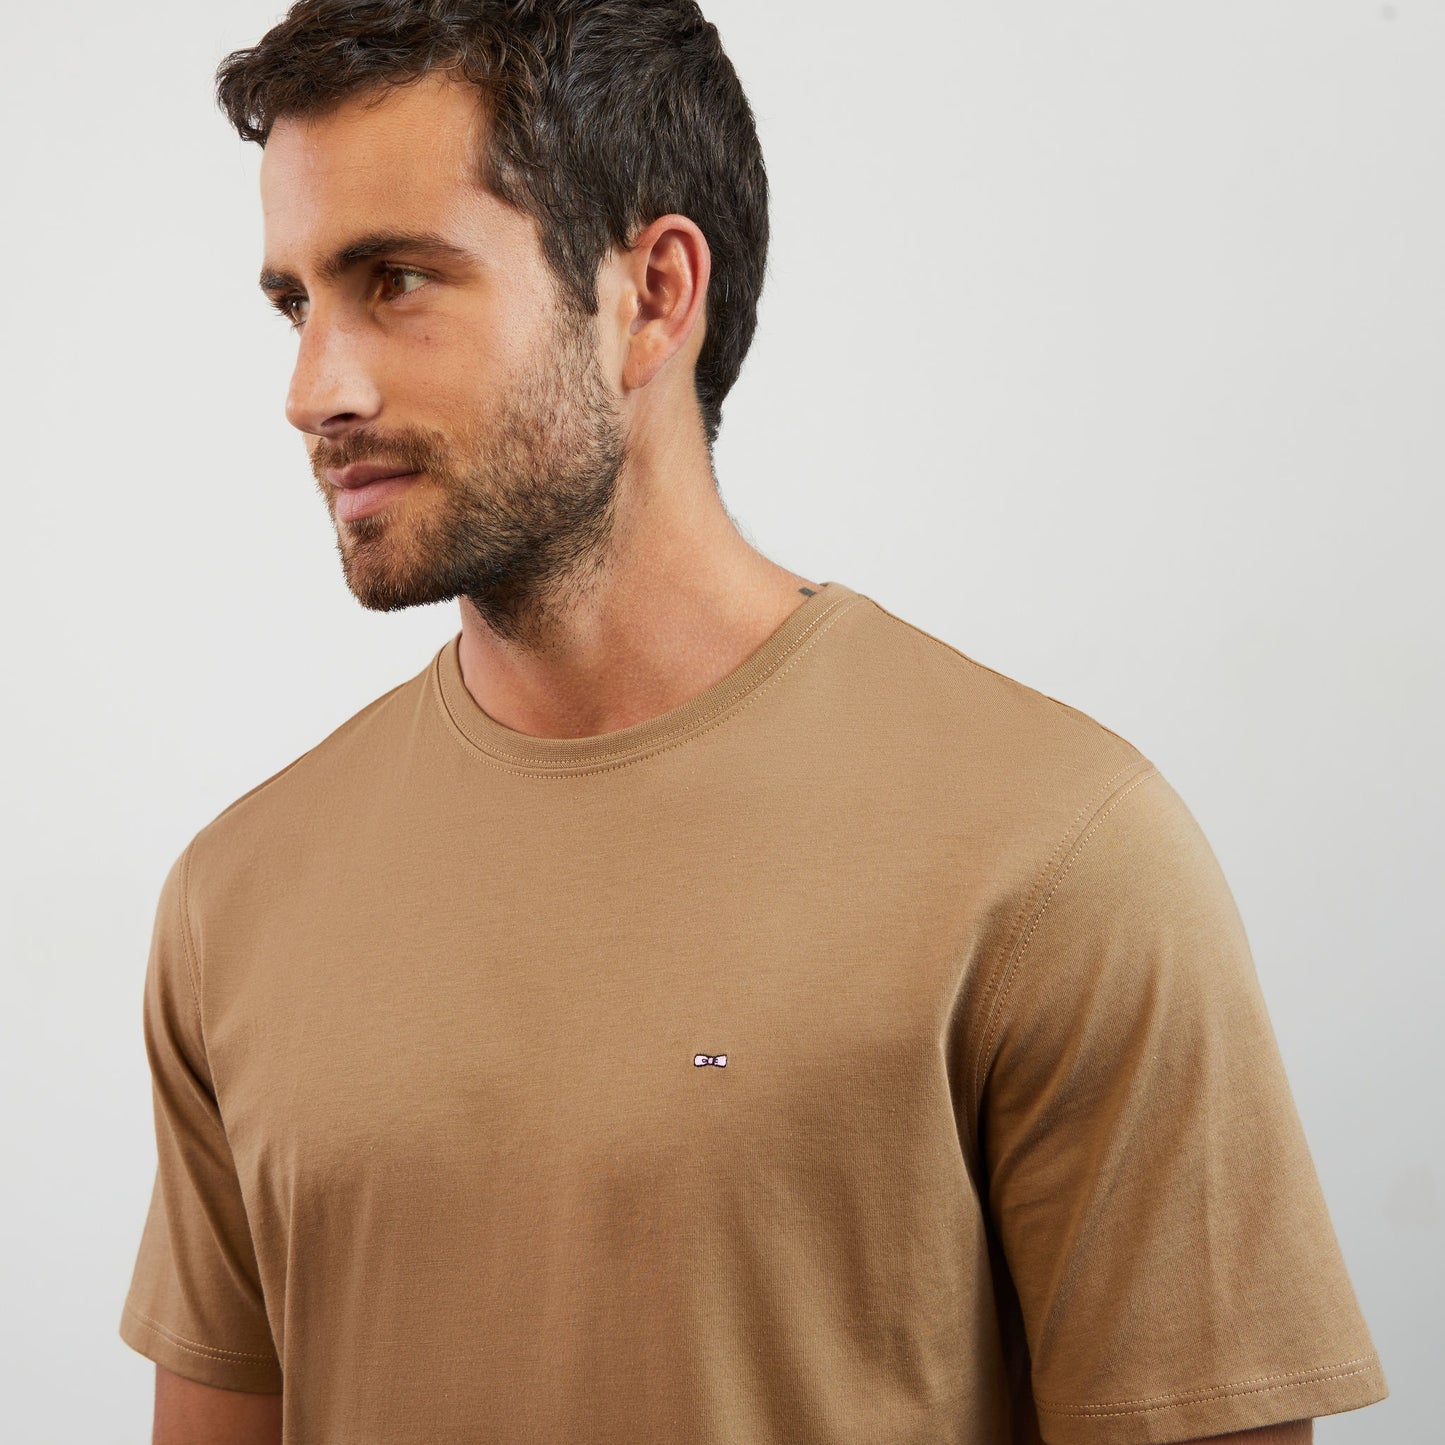 T-shirt beige foncé manches courtes en coton Pima